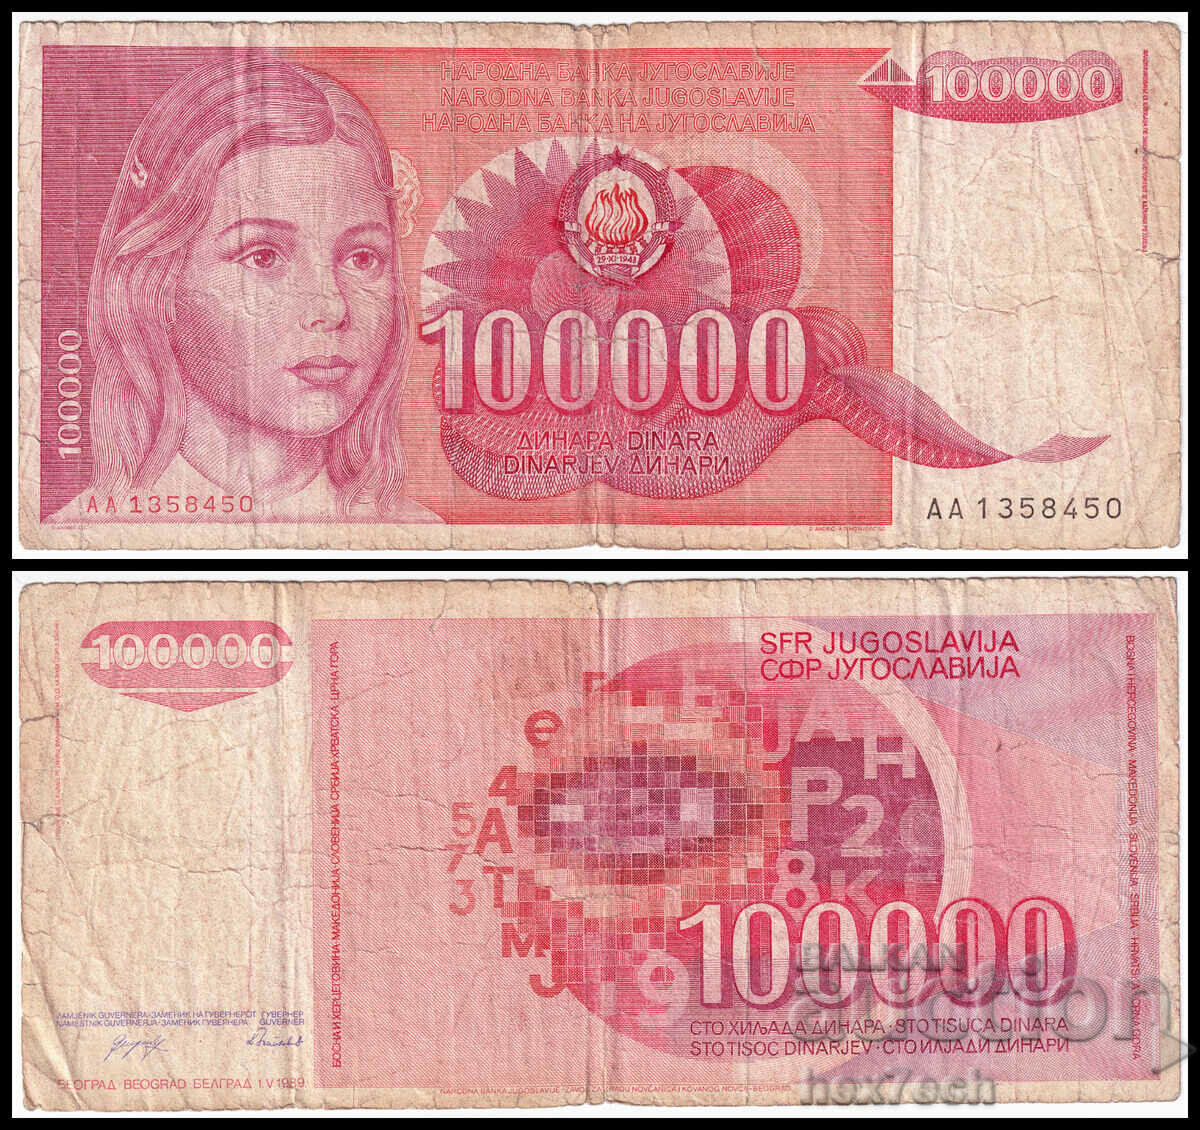 ❤️ ⭐ Iugoslavia 1989 100000 dinari ⭐ ❤️